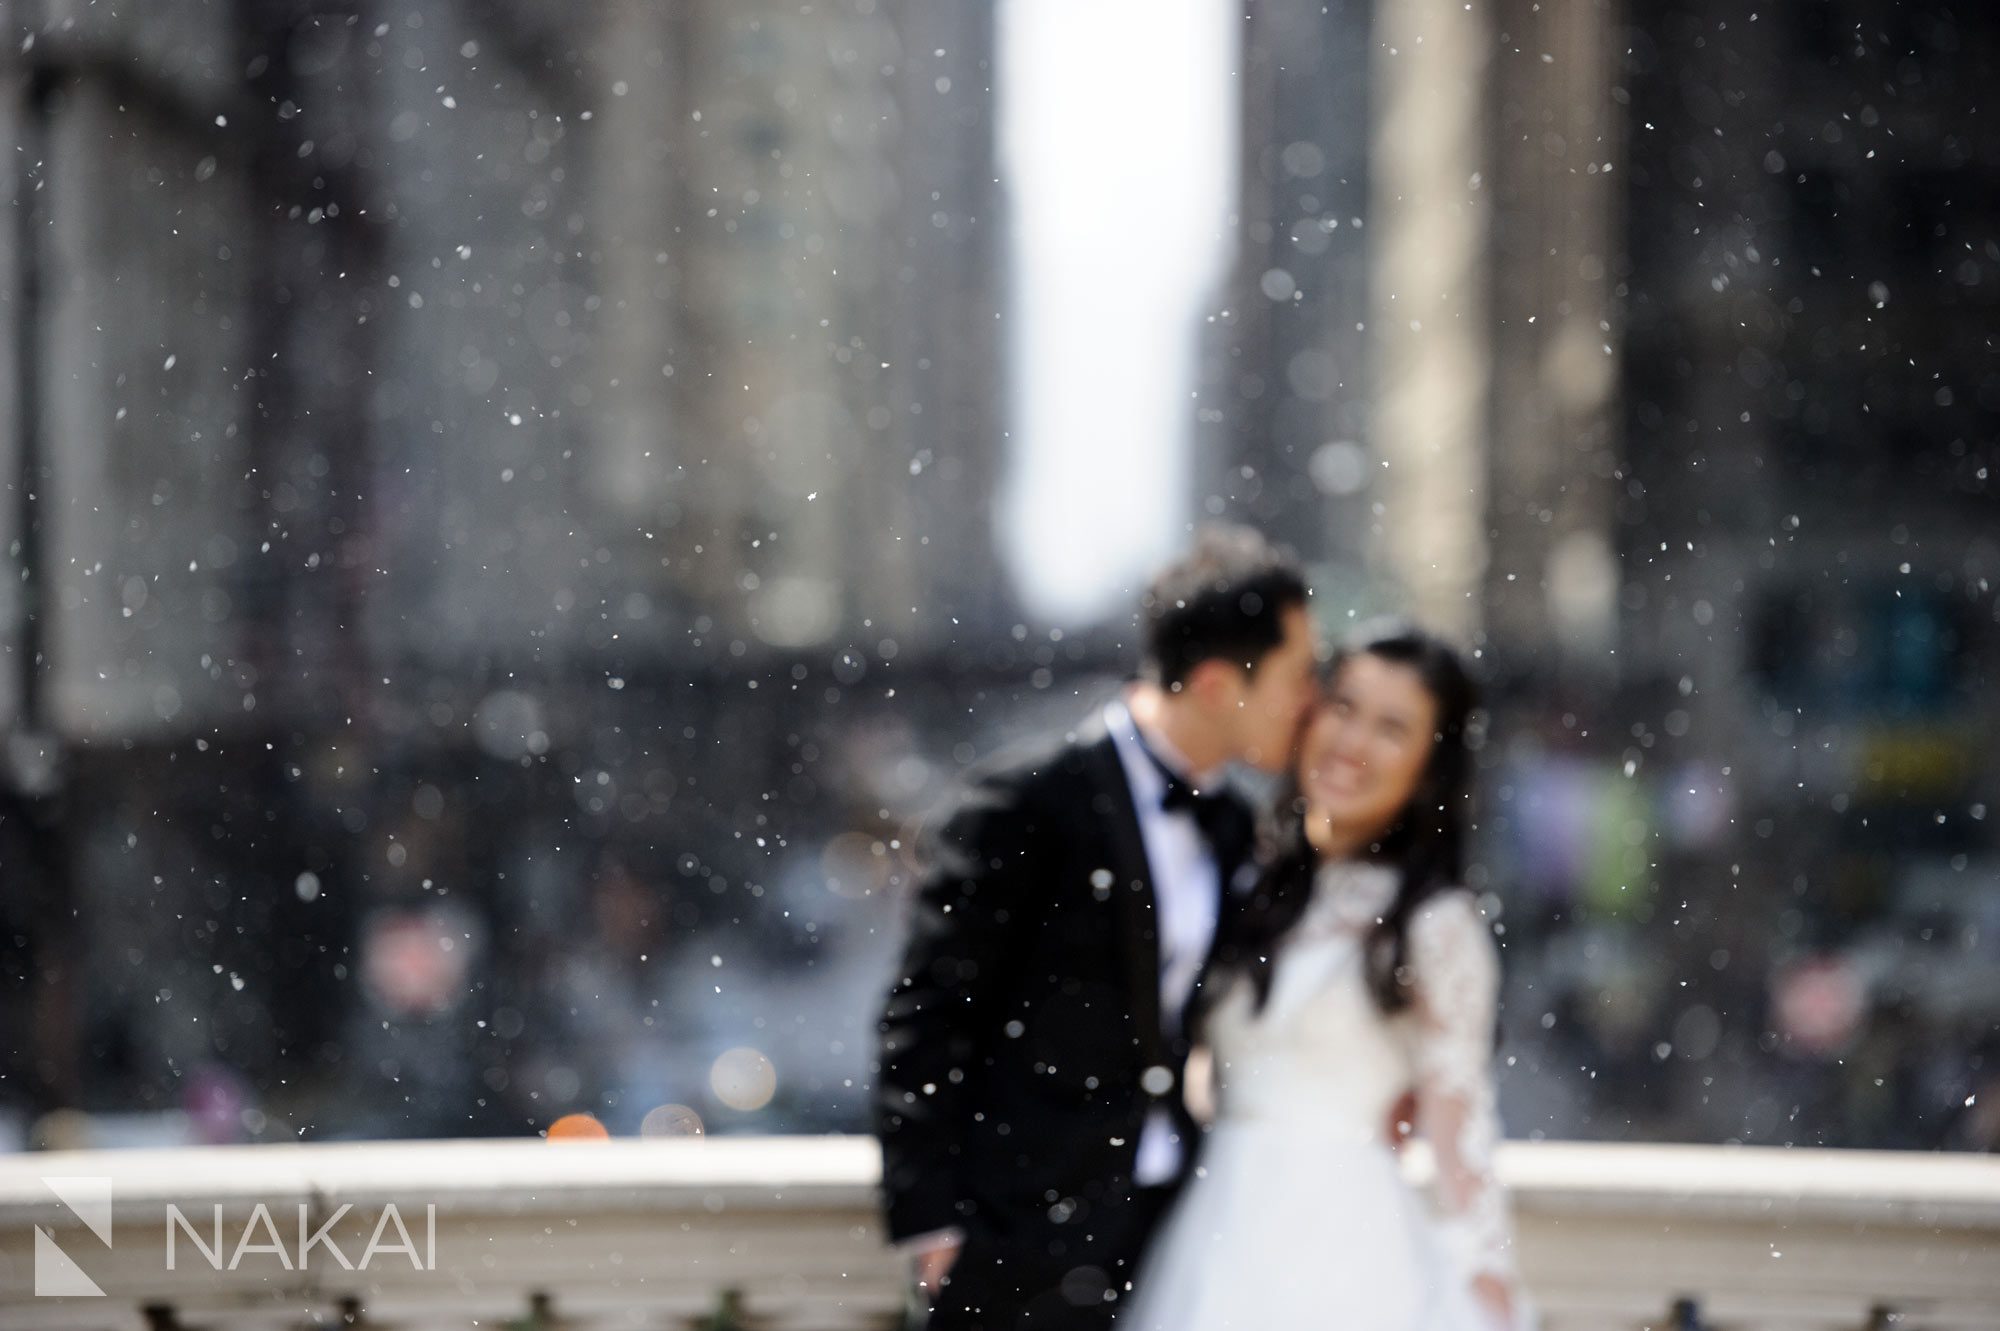 Chicago Millennium Park Wedding Photo with Snow!